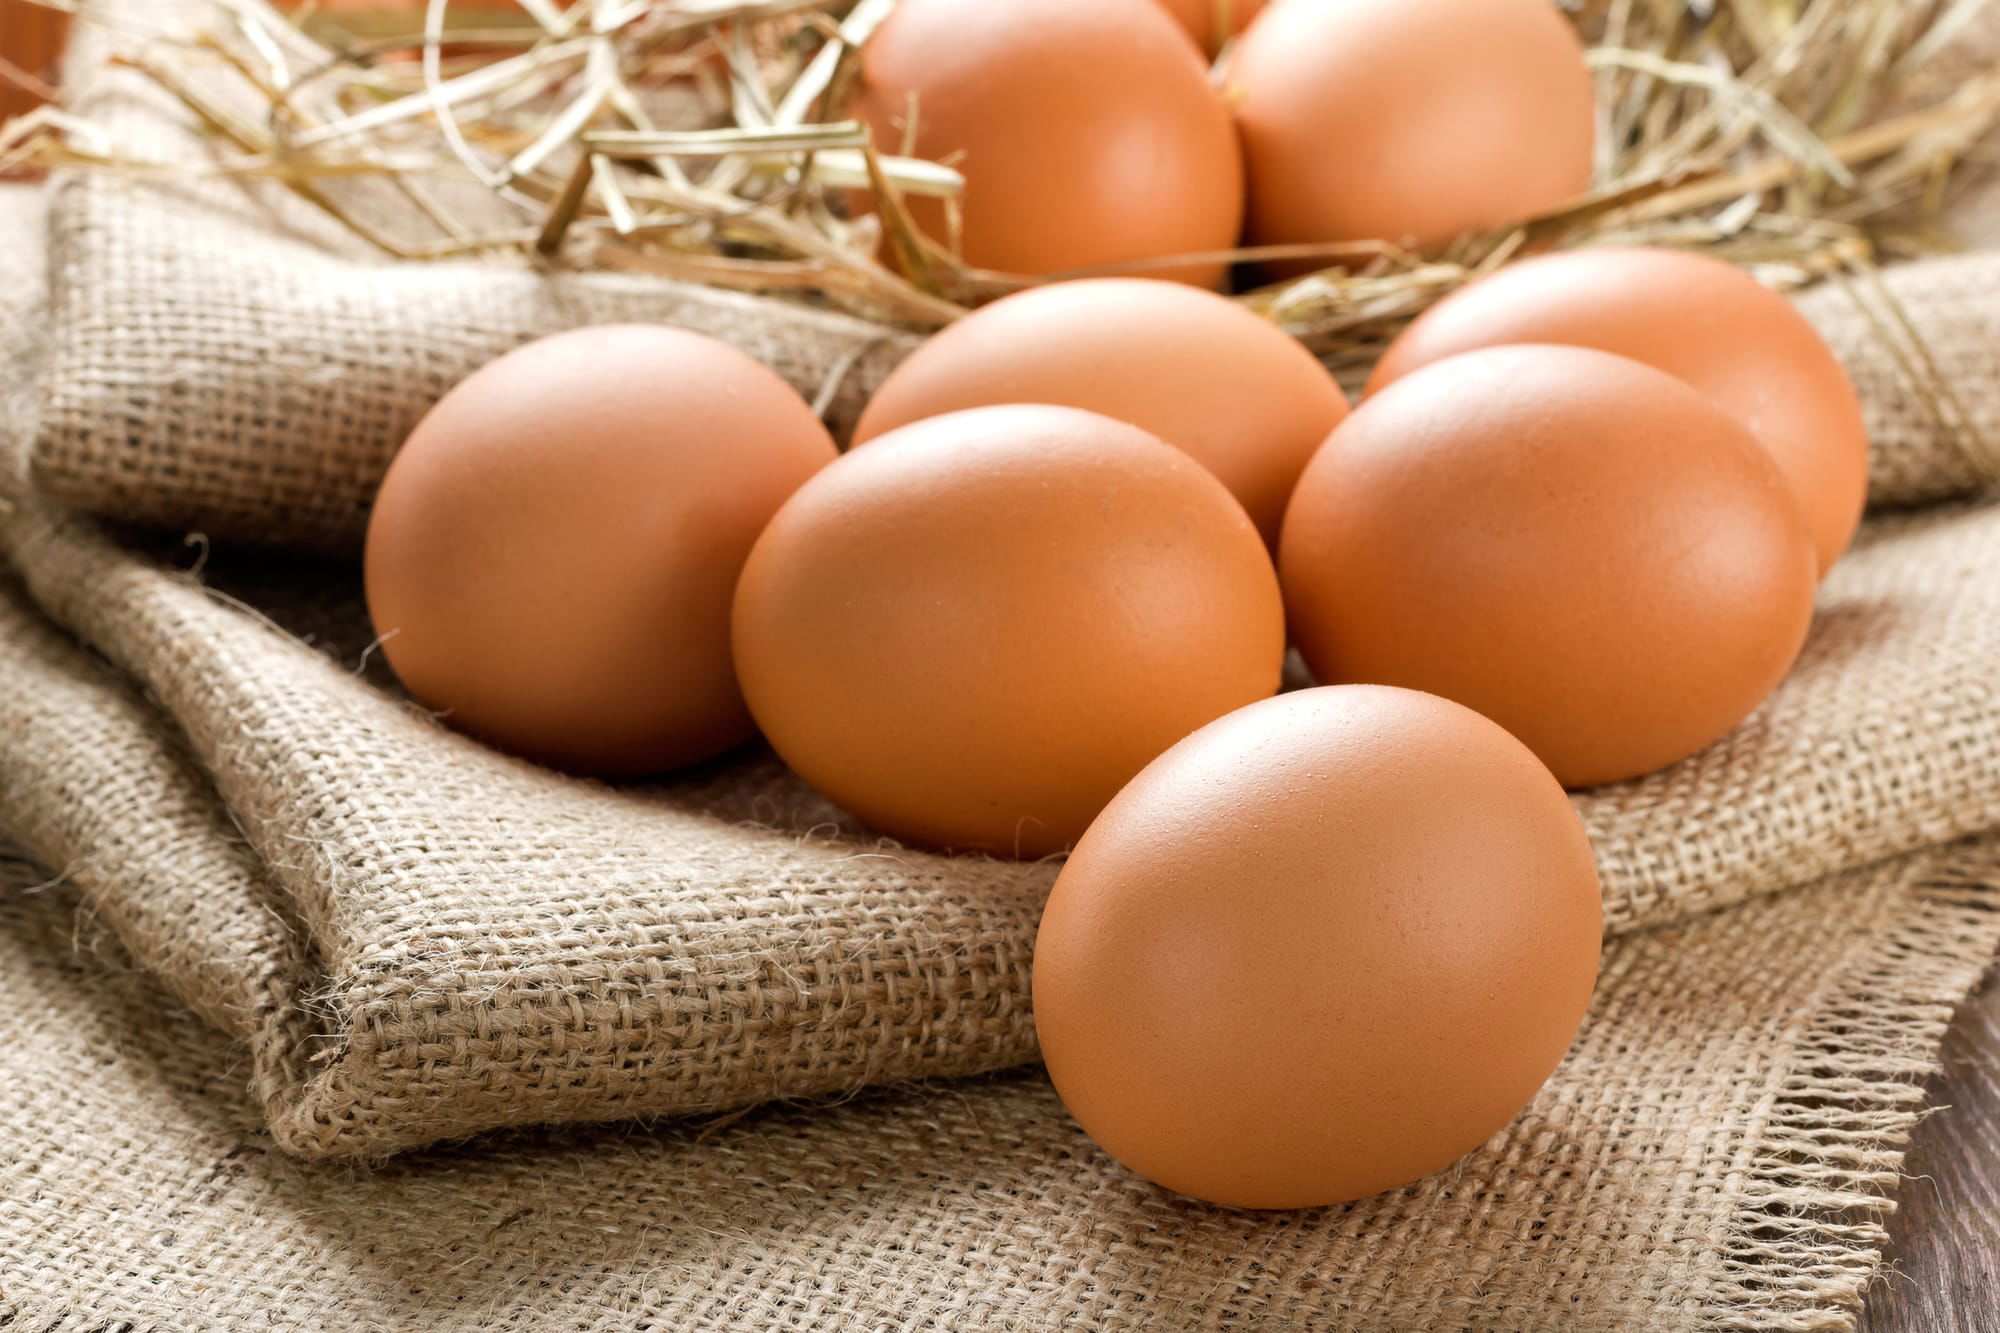 هل البيض يسبب غازات؟